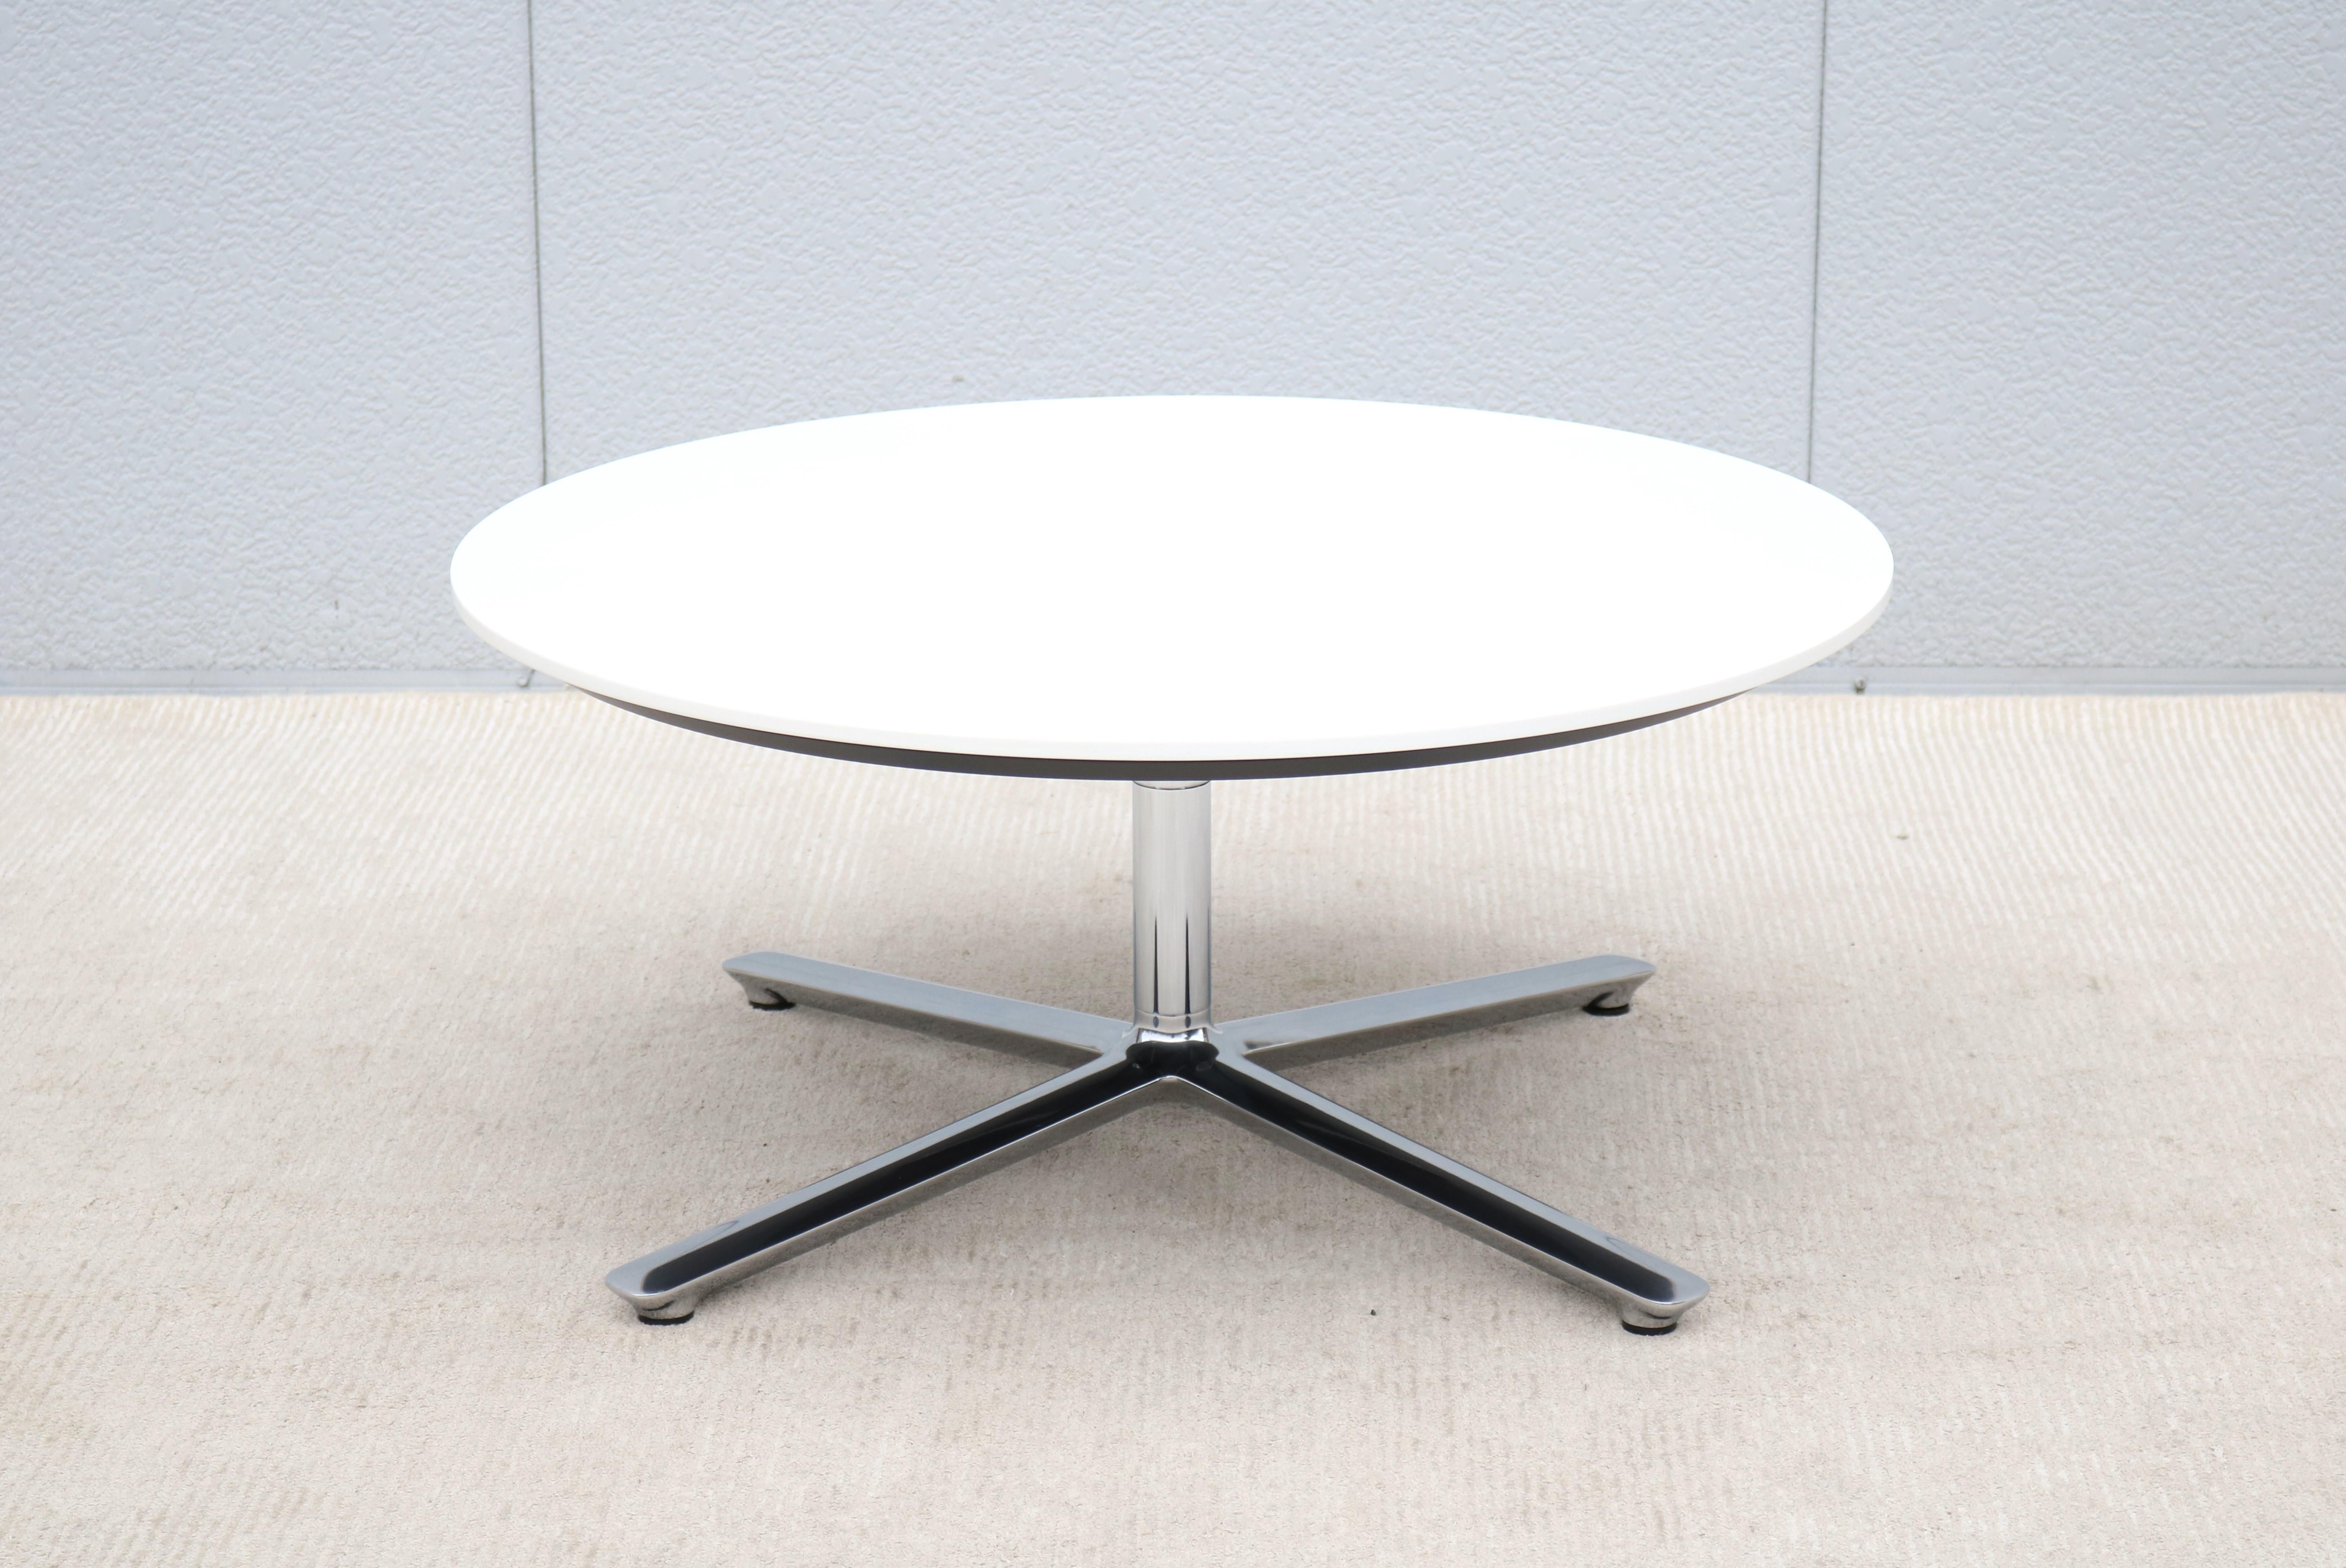 La beauté moderne et le design astucieux de la table By/One s'intègrent parfaitement dans tous les environnements et parmi les designs classiques du milieu du siècle.
Il s'agit d'un chef-d'œuvre bien conçu et bien fabriqué, une combinaison